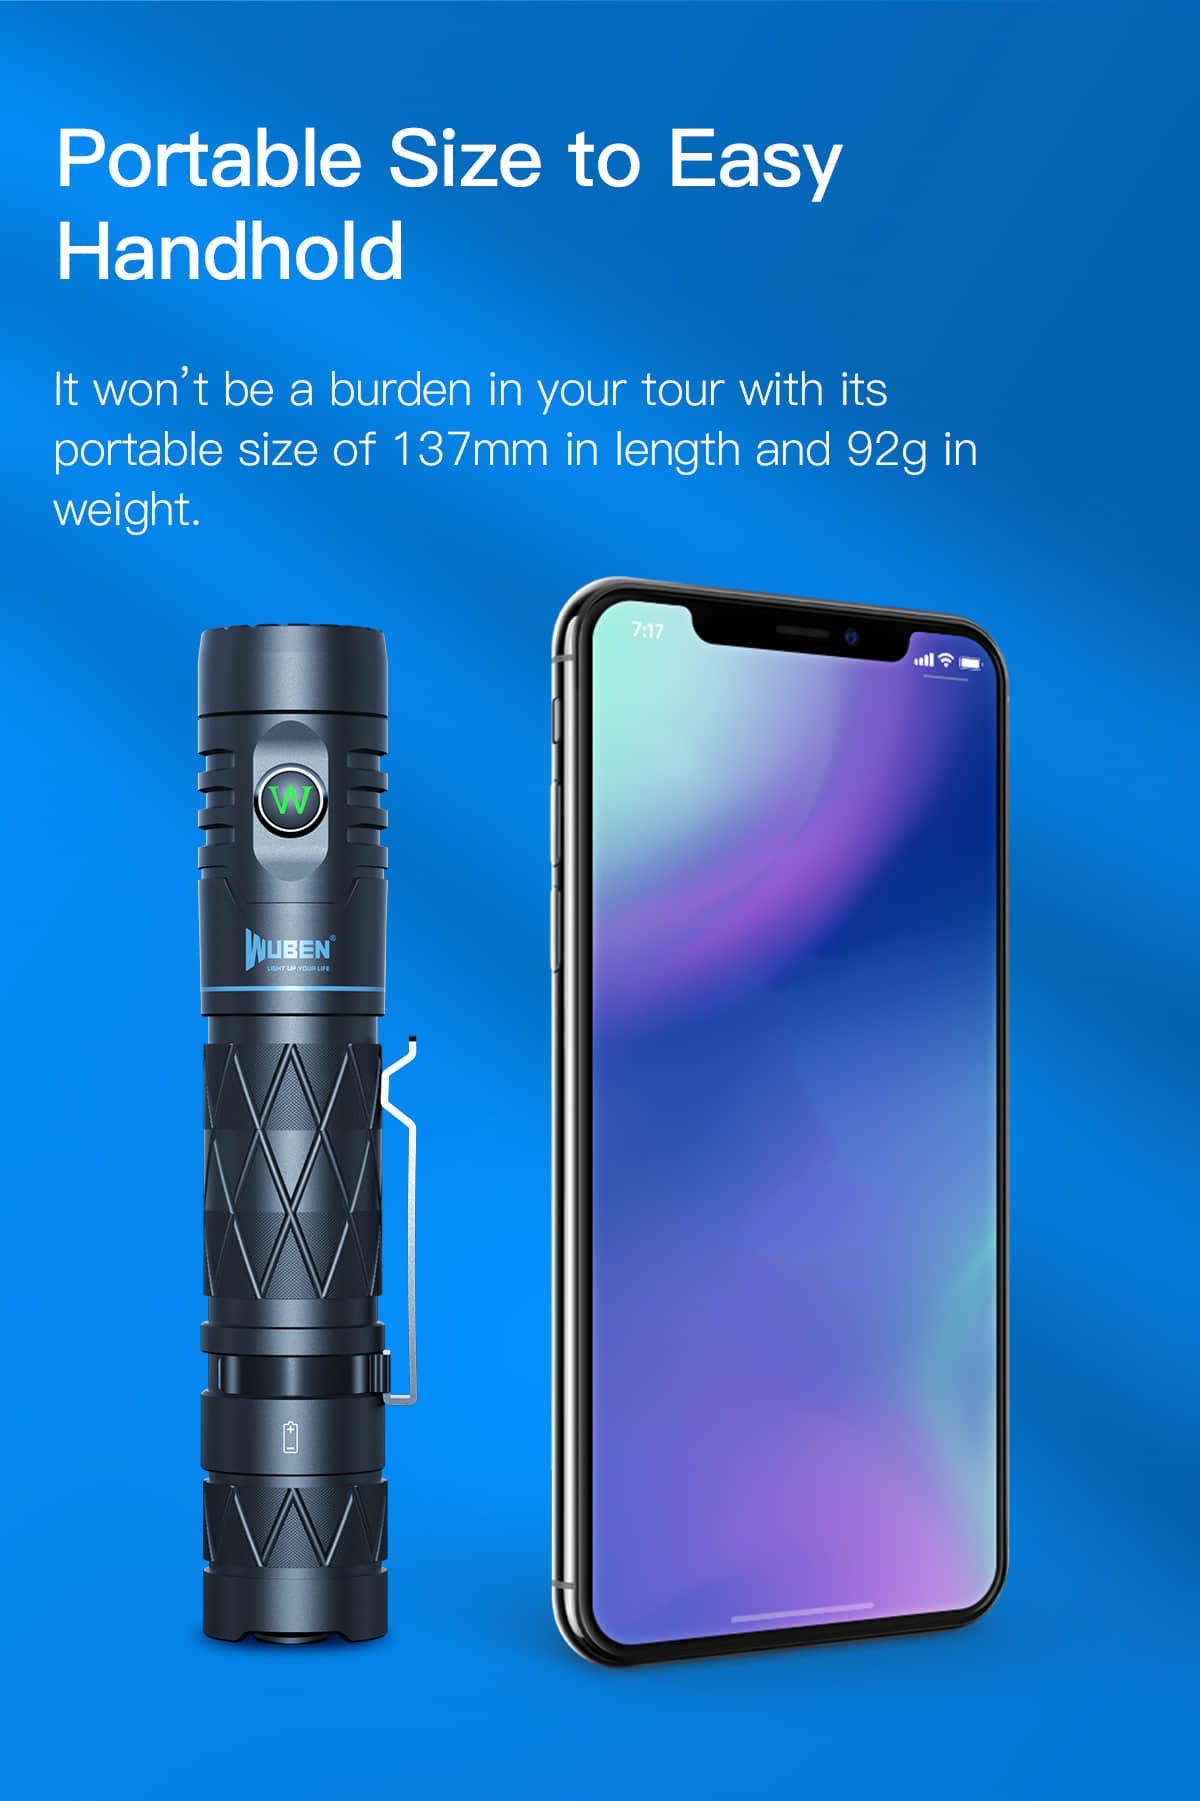 Wuben E12R Power Bank Flashlight – GadgetConnections